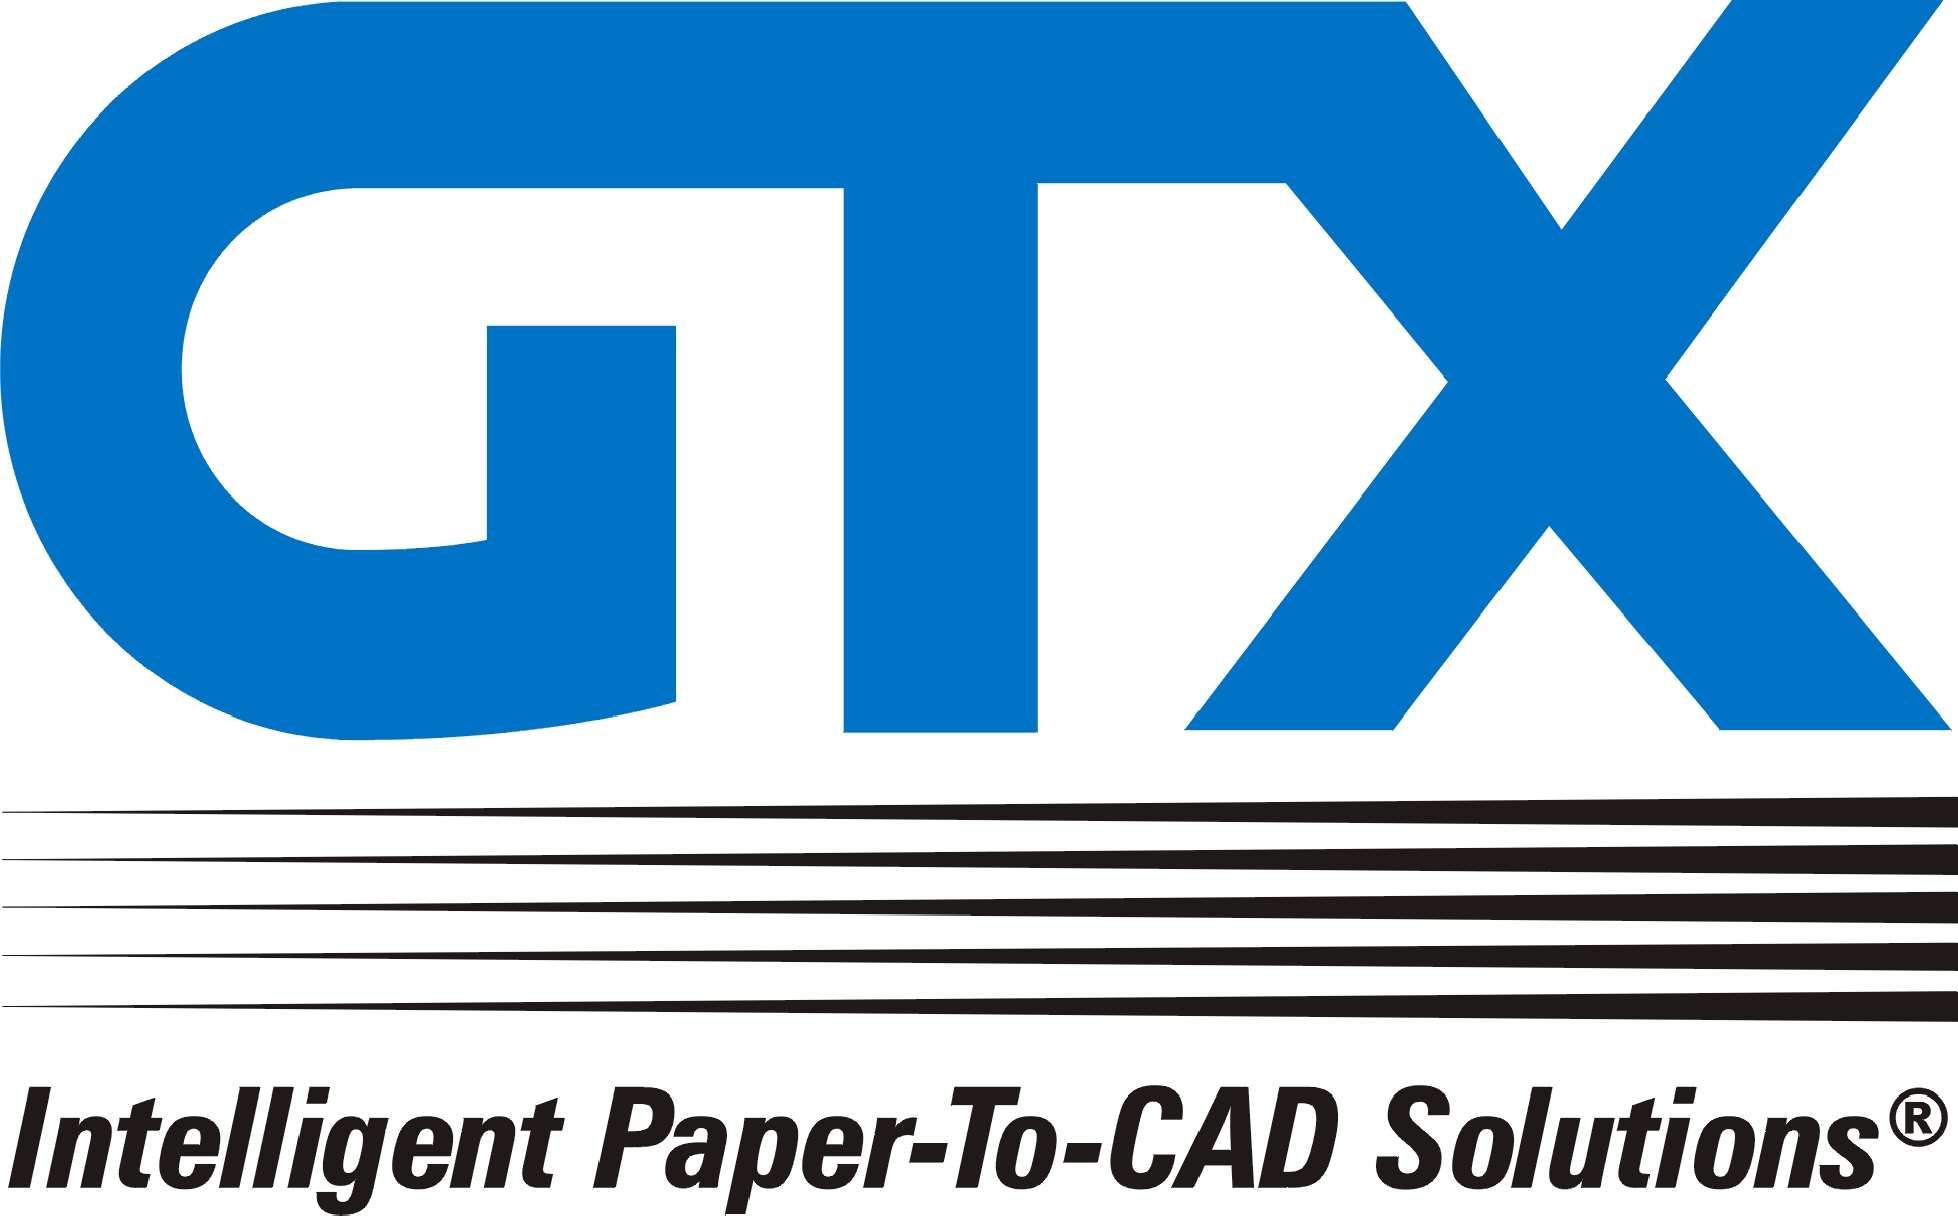 G T X (Europe) Ltd